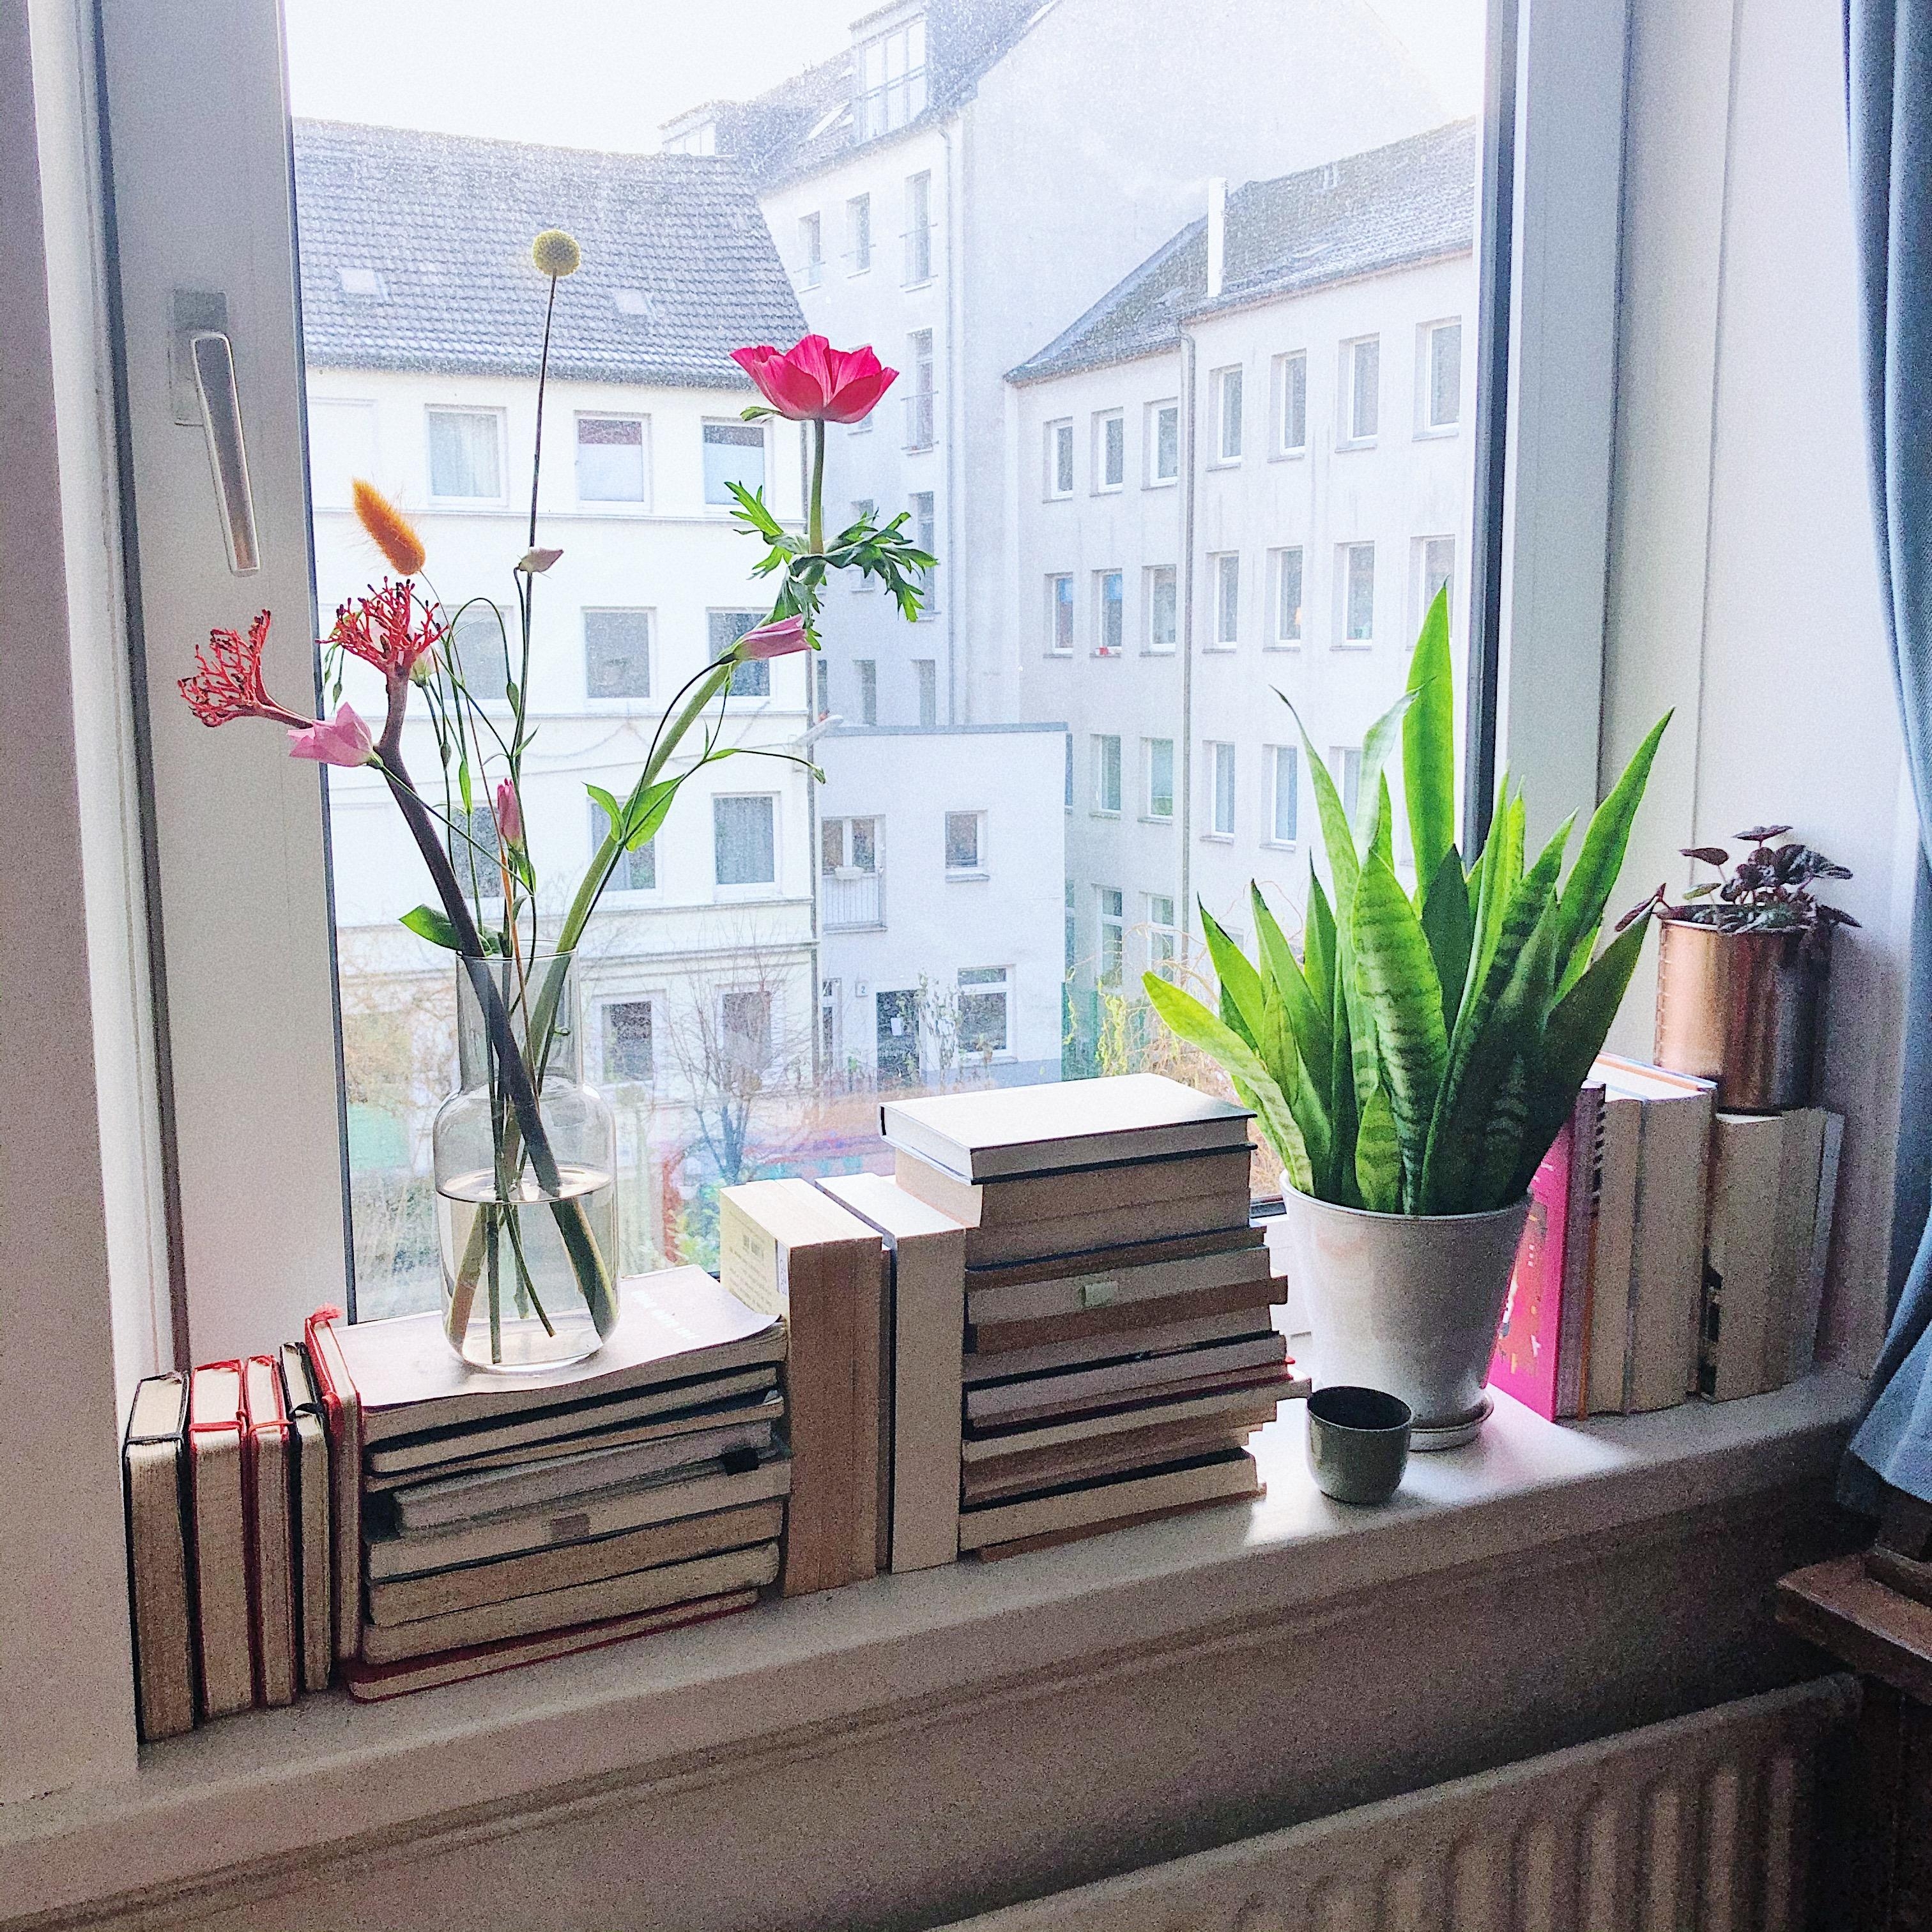 Mehr Bücher, mehr Blumen - mehr Licht: yeah, danke dafür Hamburg 💫
#Bücher #Blumen #Fensterbank